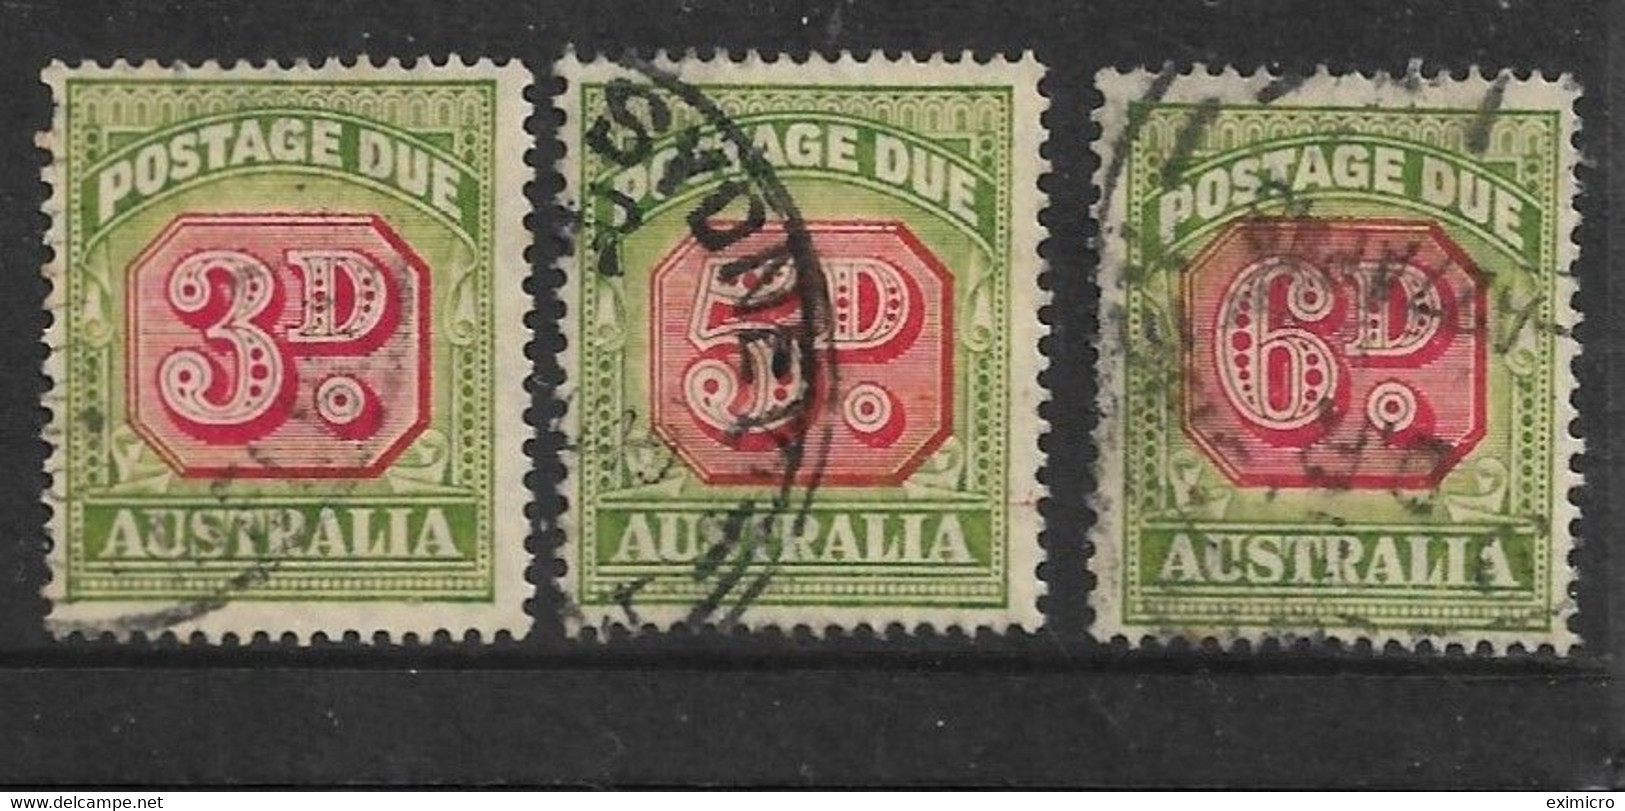 AUSTRALIA 1946 - 1957 3d, 5d, 6d POSTAGE DUES SG D122, D124, D125 FINE USED Cat £20+ - Portomarken